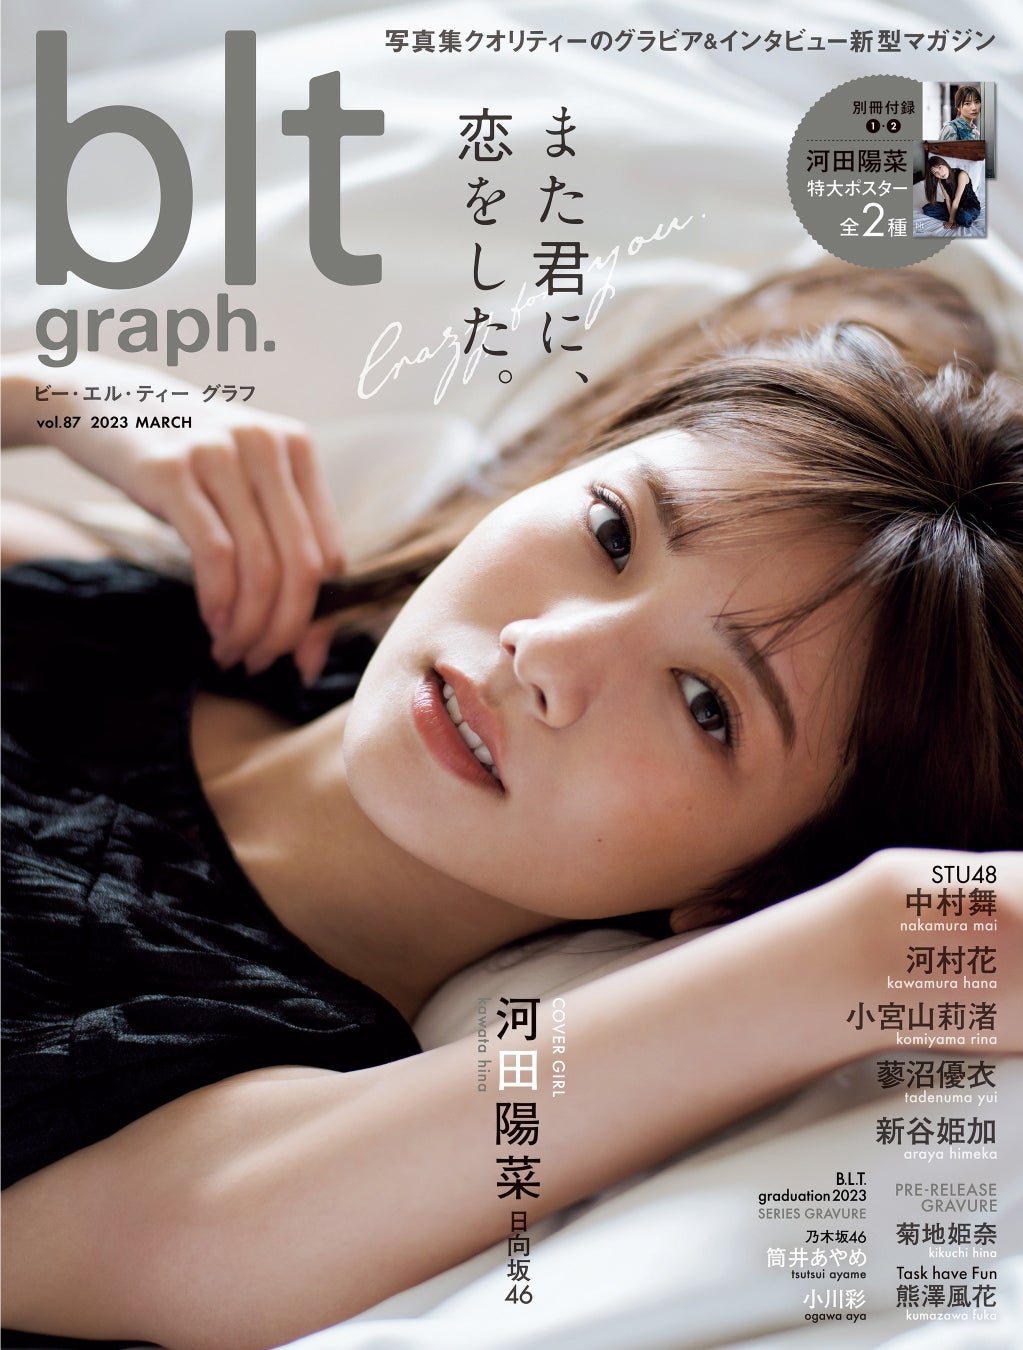 私たちは何度も、河田陽菜に恋をするーー。日向坂46・河田陽菜「blt graph.vol.87」表紙を公開!!